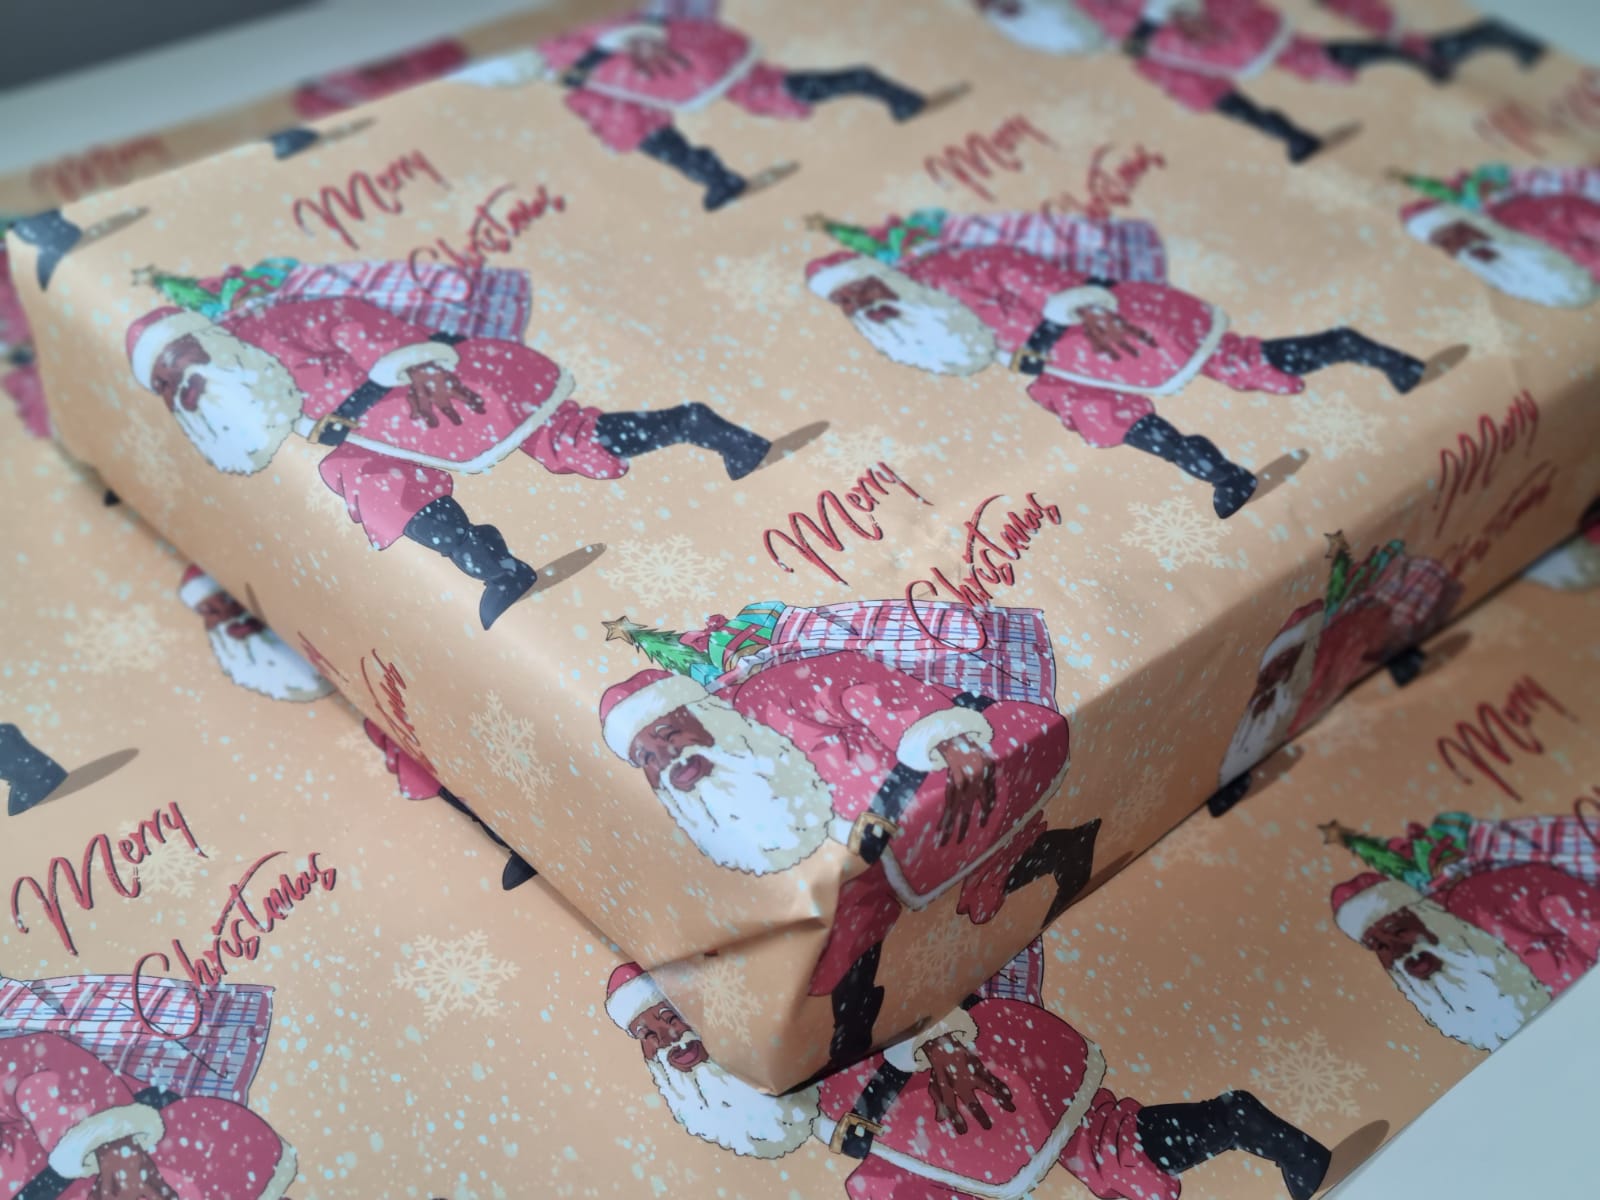 mAh Melanin Ken, The Black Santa - Remix Gift Wrap, Size: 1